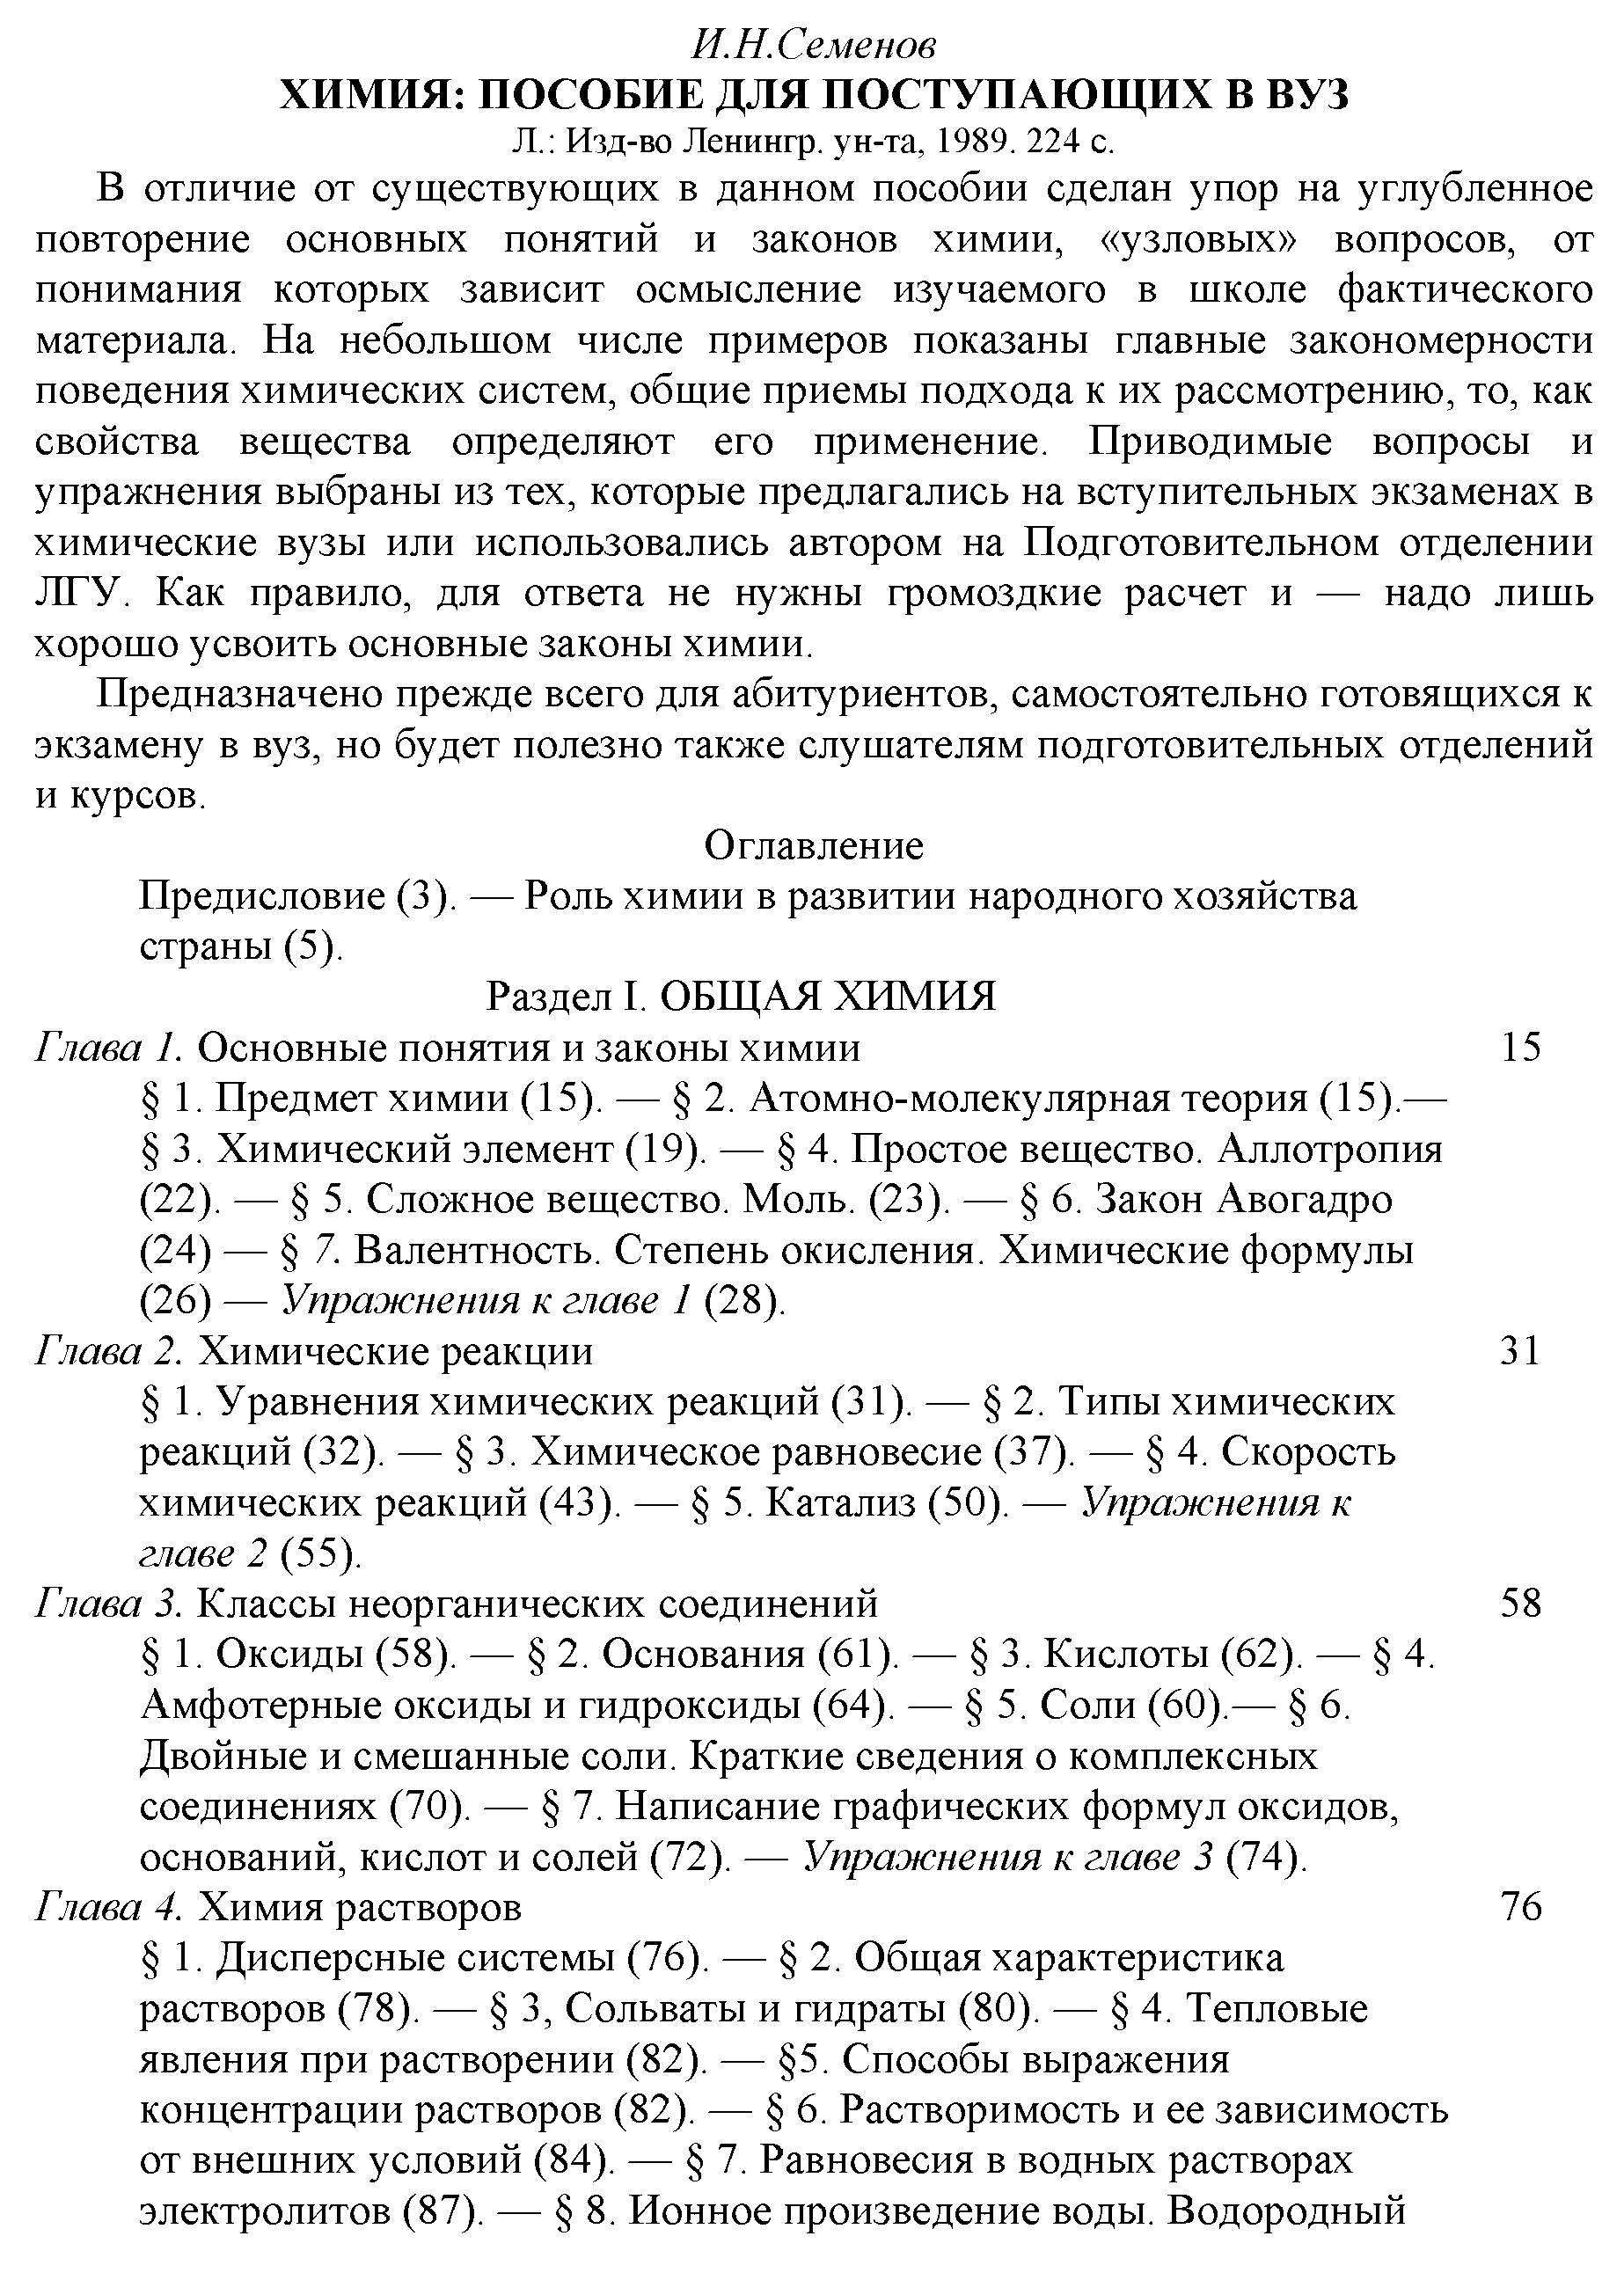 Предисловие (3). — Роль химии в развитии народного хозяйства страны (5).